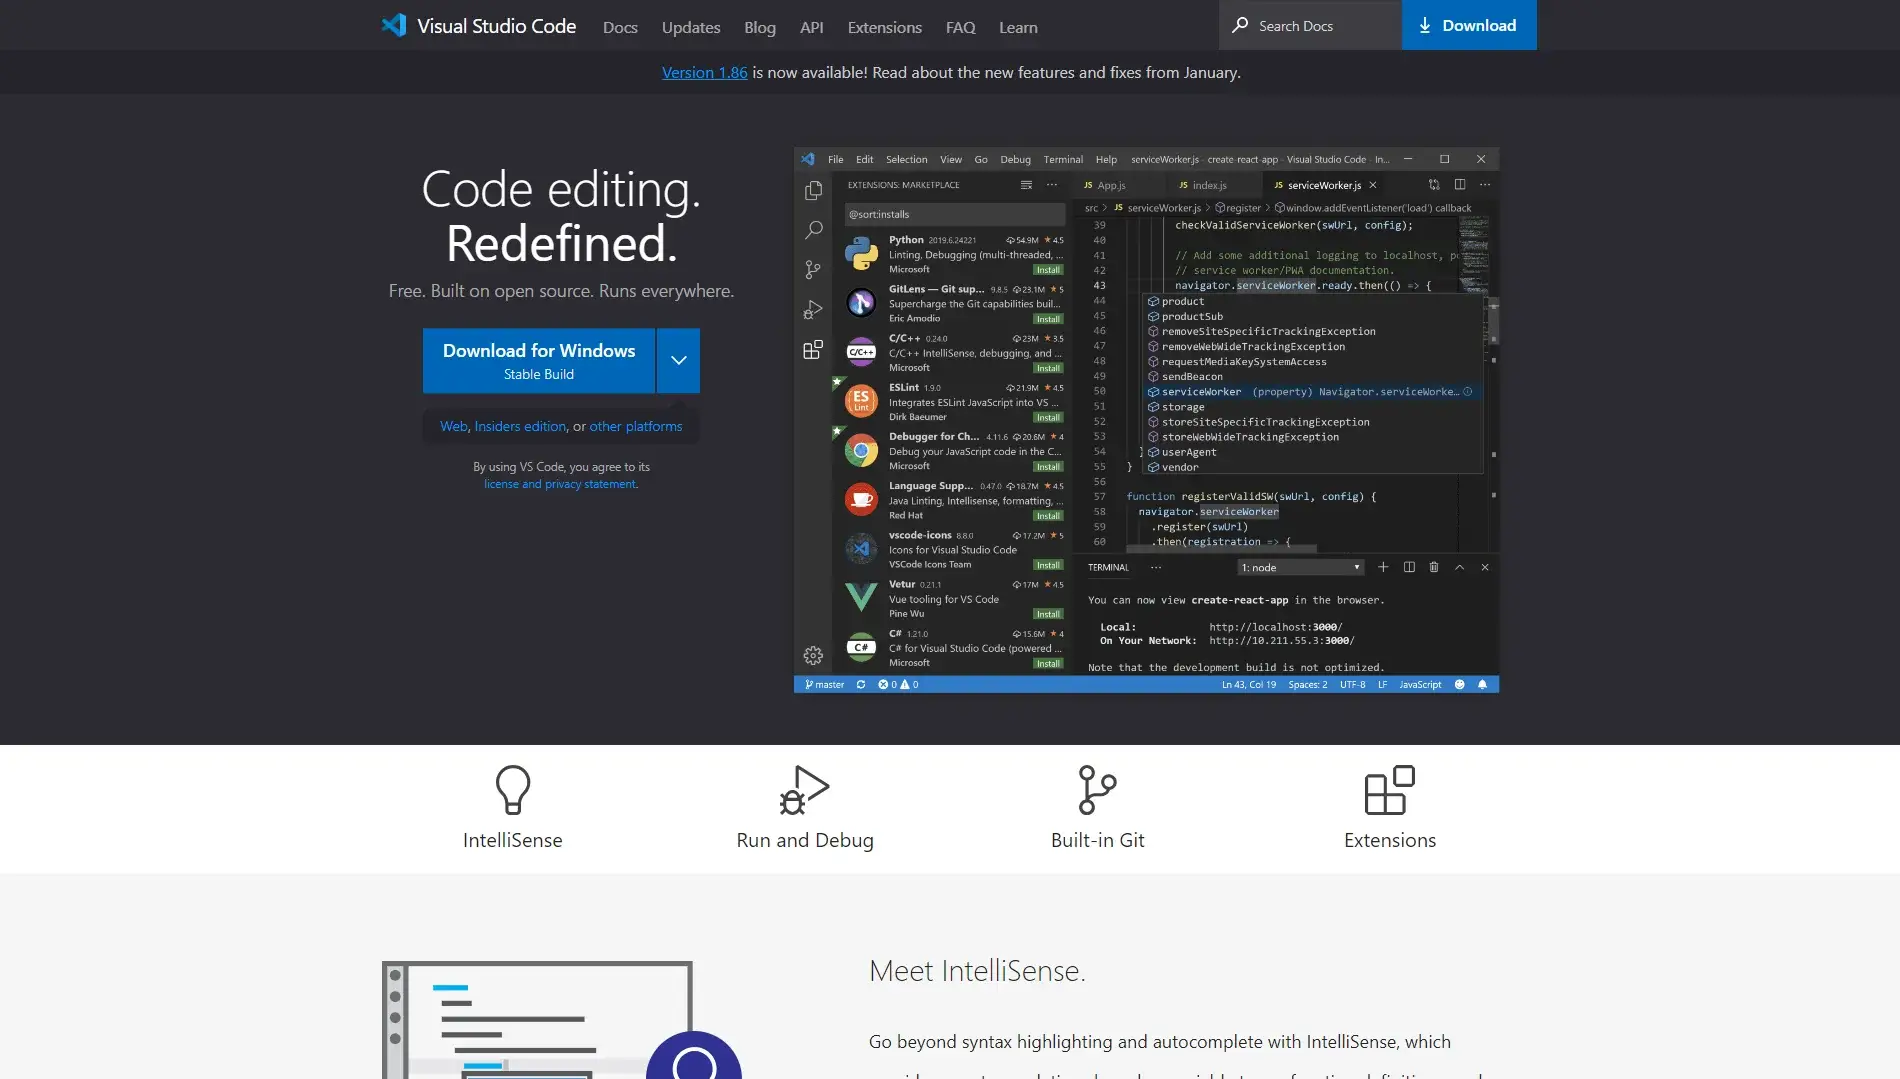 Visual Studio Code website homepage